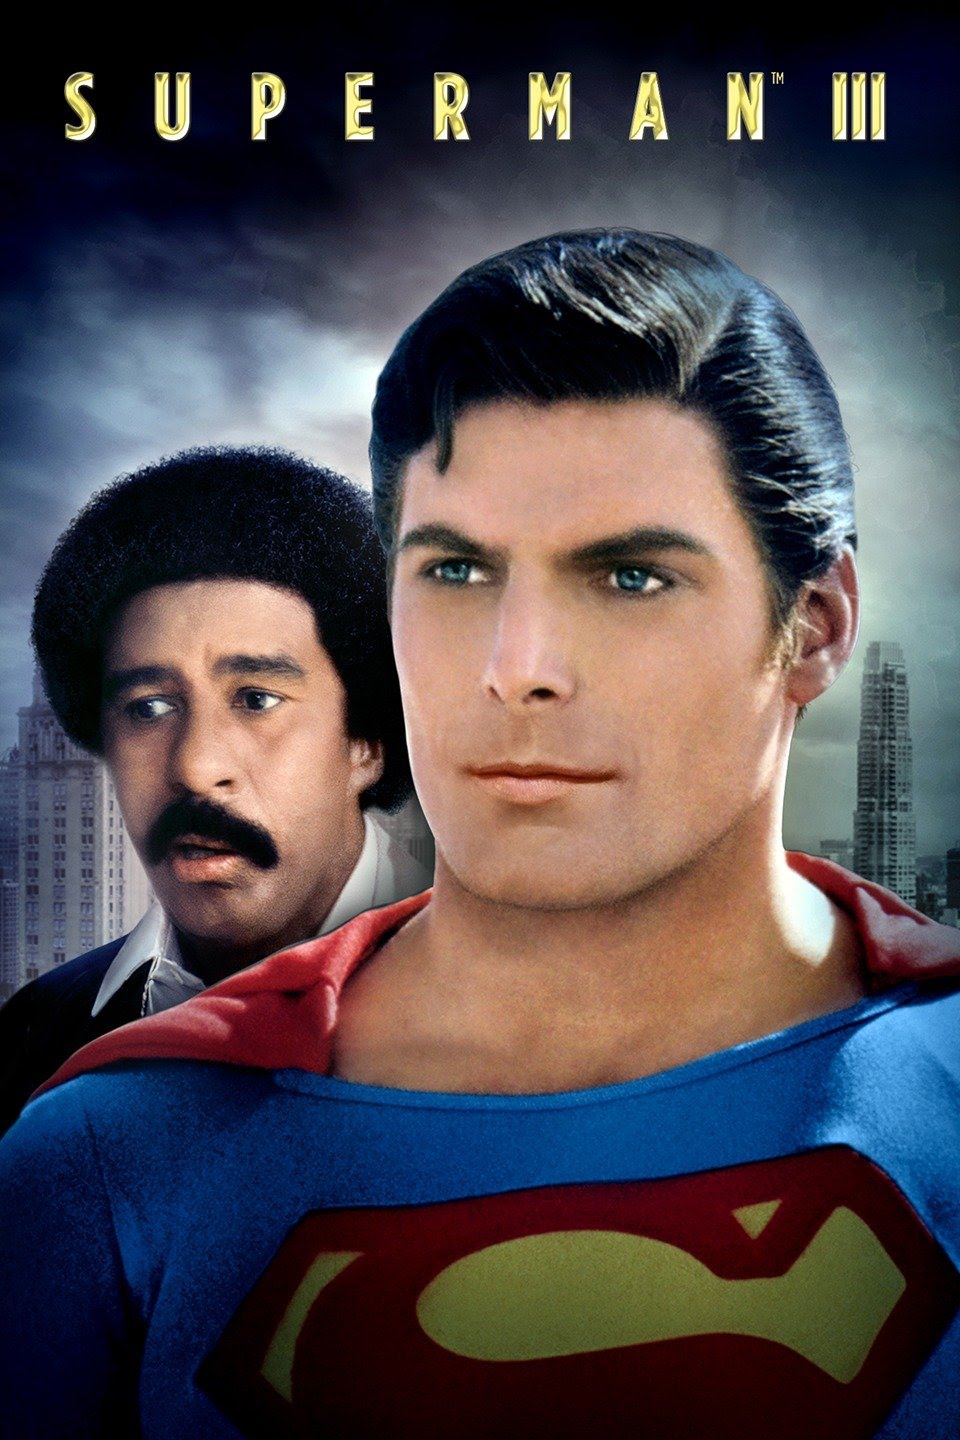 [MINI-HD] Superman III (1983) ซูเปอร์แมน รีเทิร์น III ภาค 3 [1080p] [พากย์ไทย 5.1 + เสียงอังกฤษ DTS] [บรรยายไทย + อังกฤษ] [เสียงไทย + ซับไทย] [DOSYAUPLOAD]